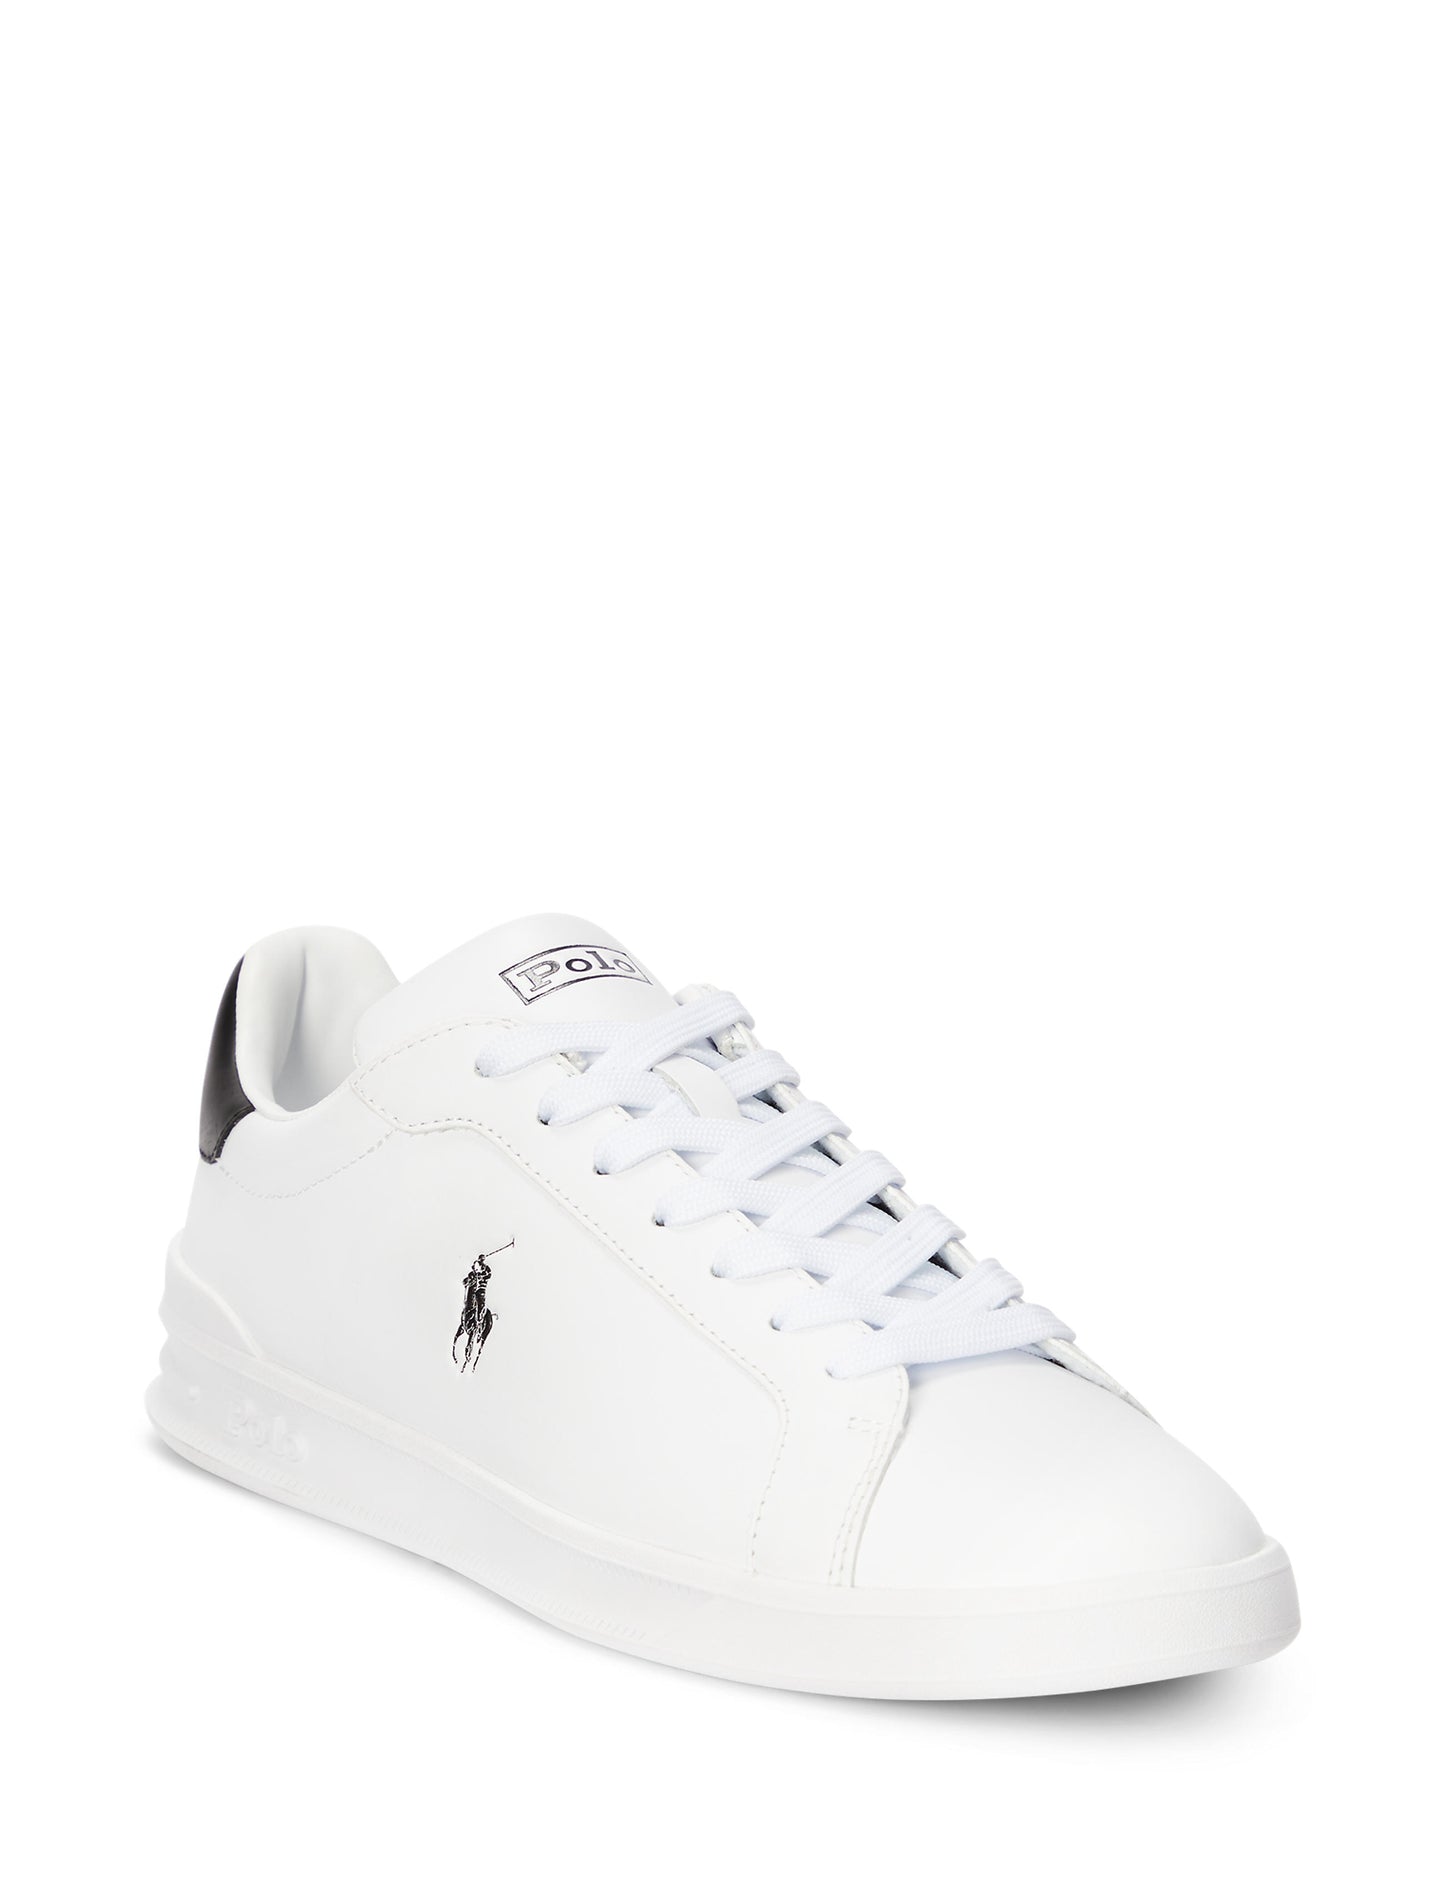 Polo Ralph Lauren Athletic Sneaker White